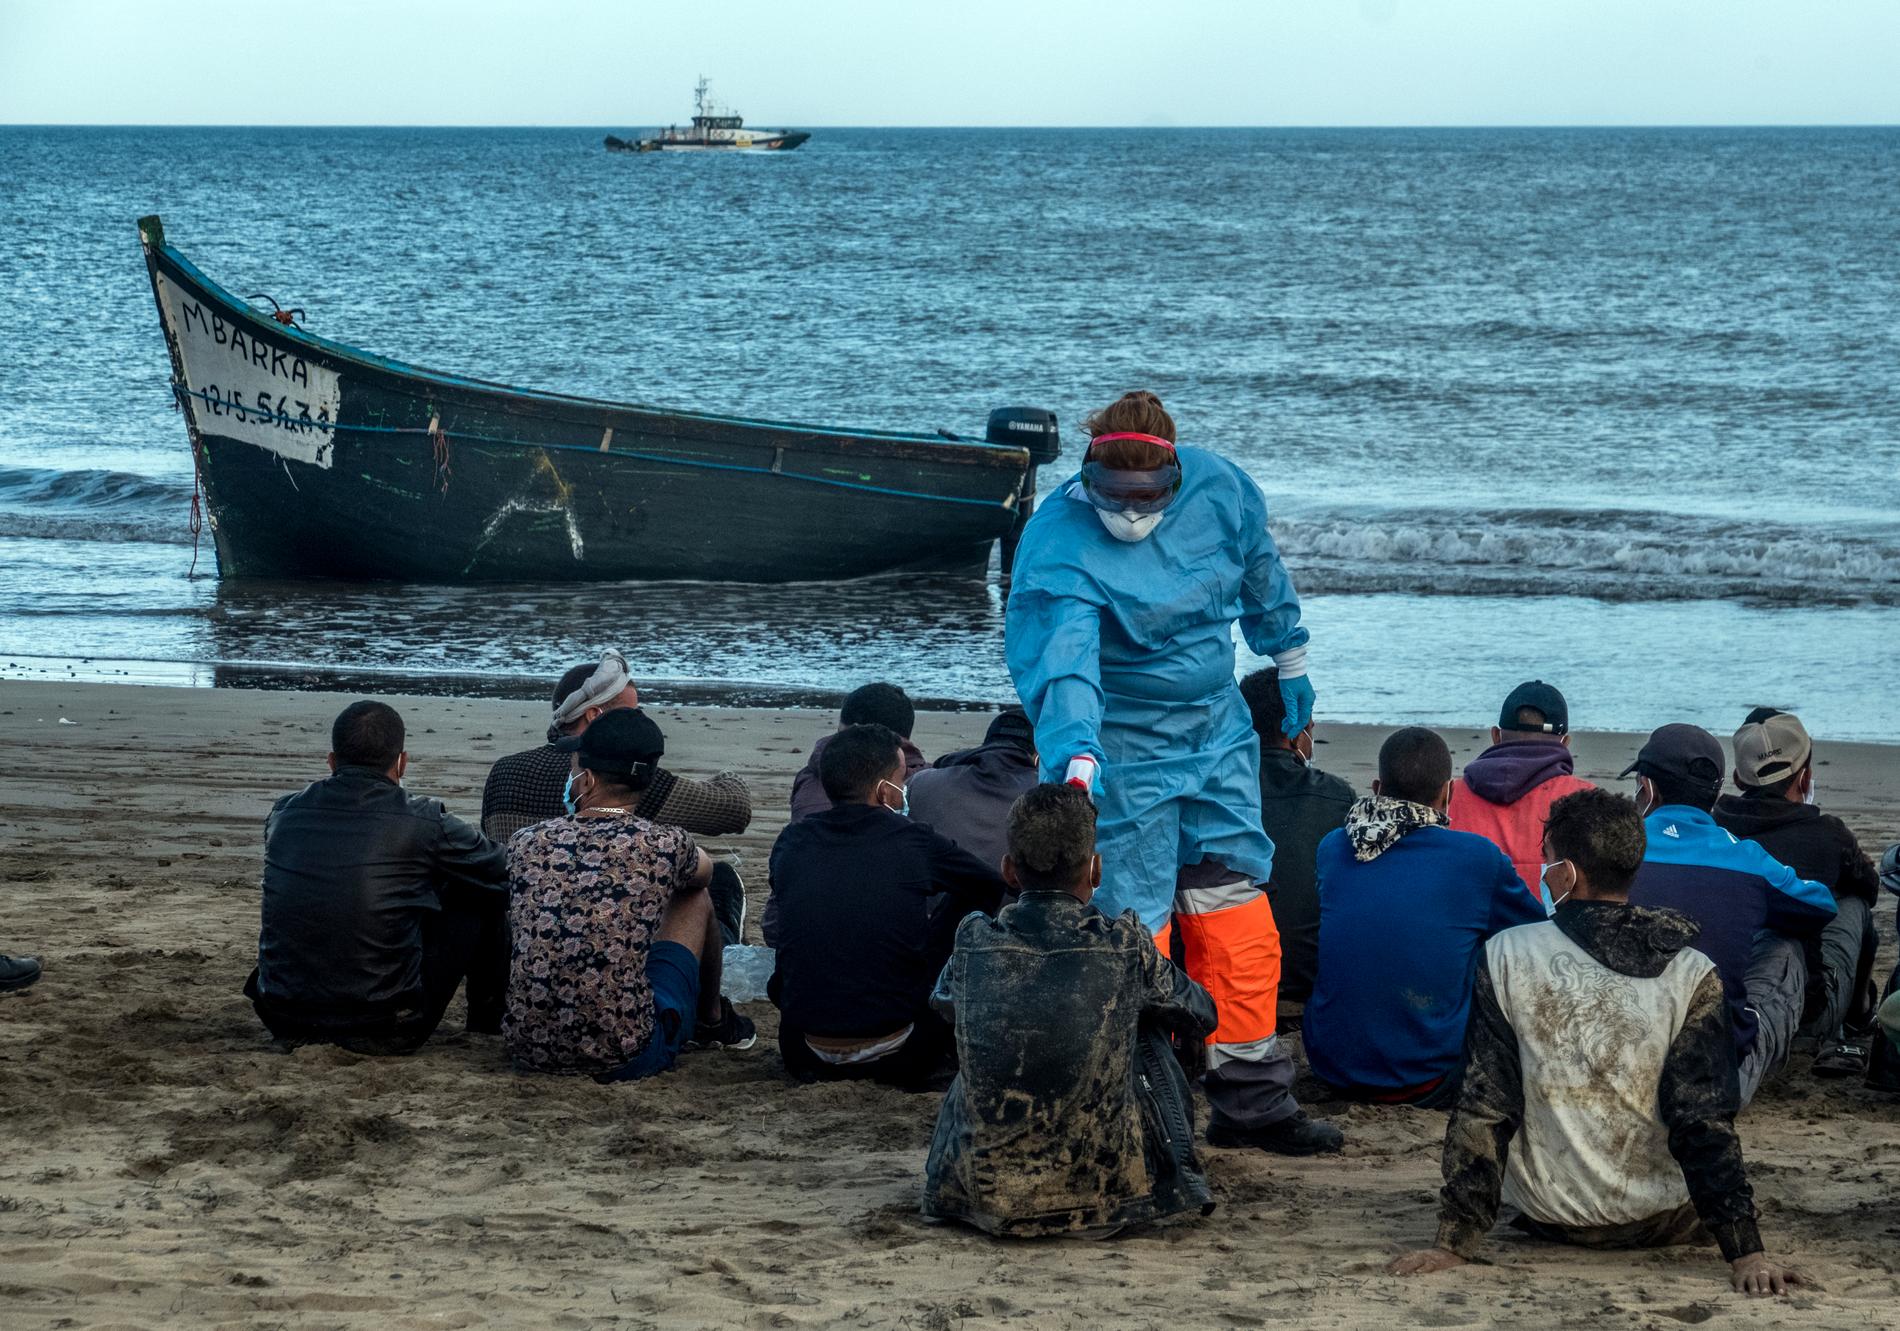 Rutten från Västafrika till Kanarieöarna beskrivs som betydligt farligare än den över Medelhavet. På bilden har migranter just anlänt till öarna i en enkel träbåt i oktober i år.